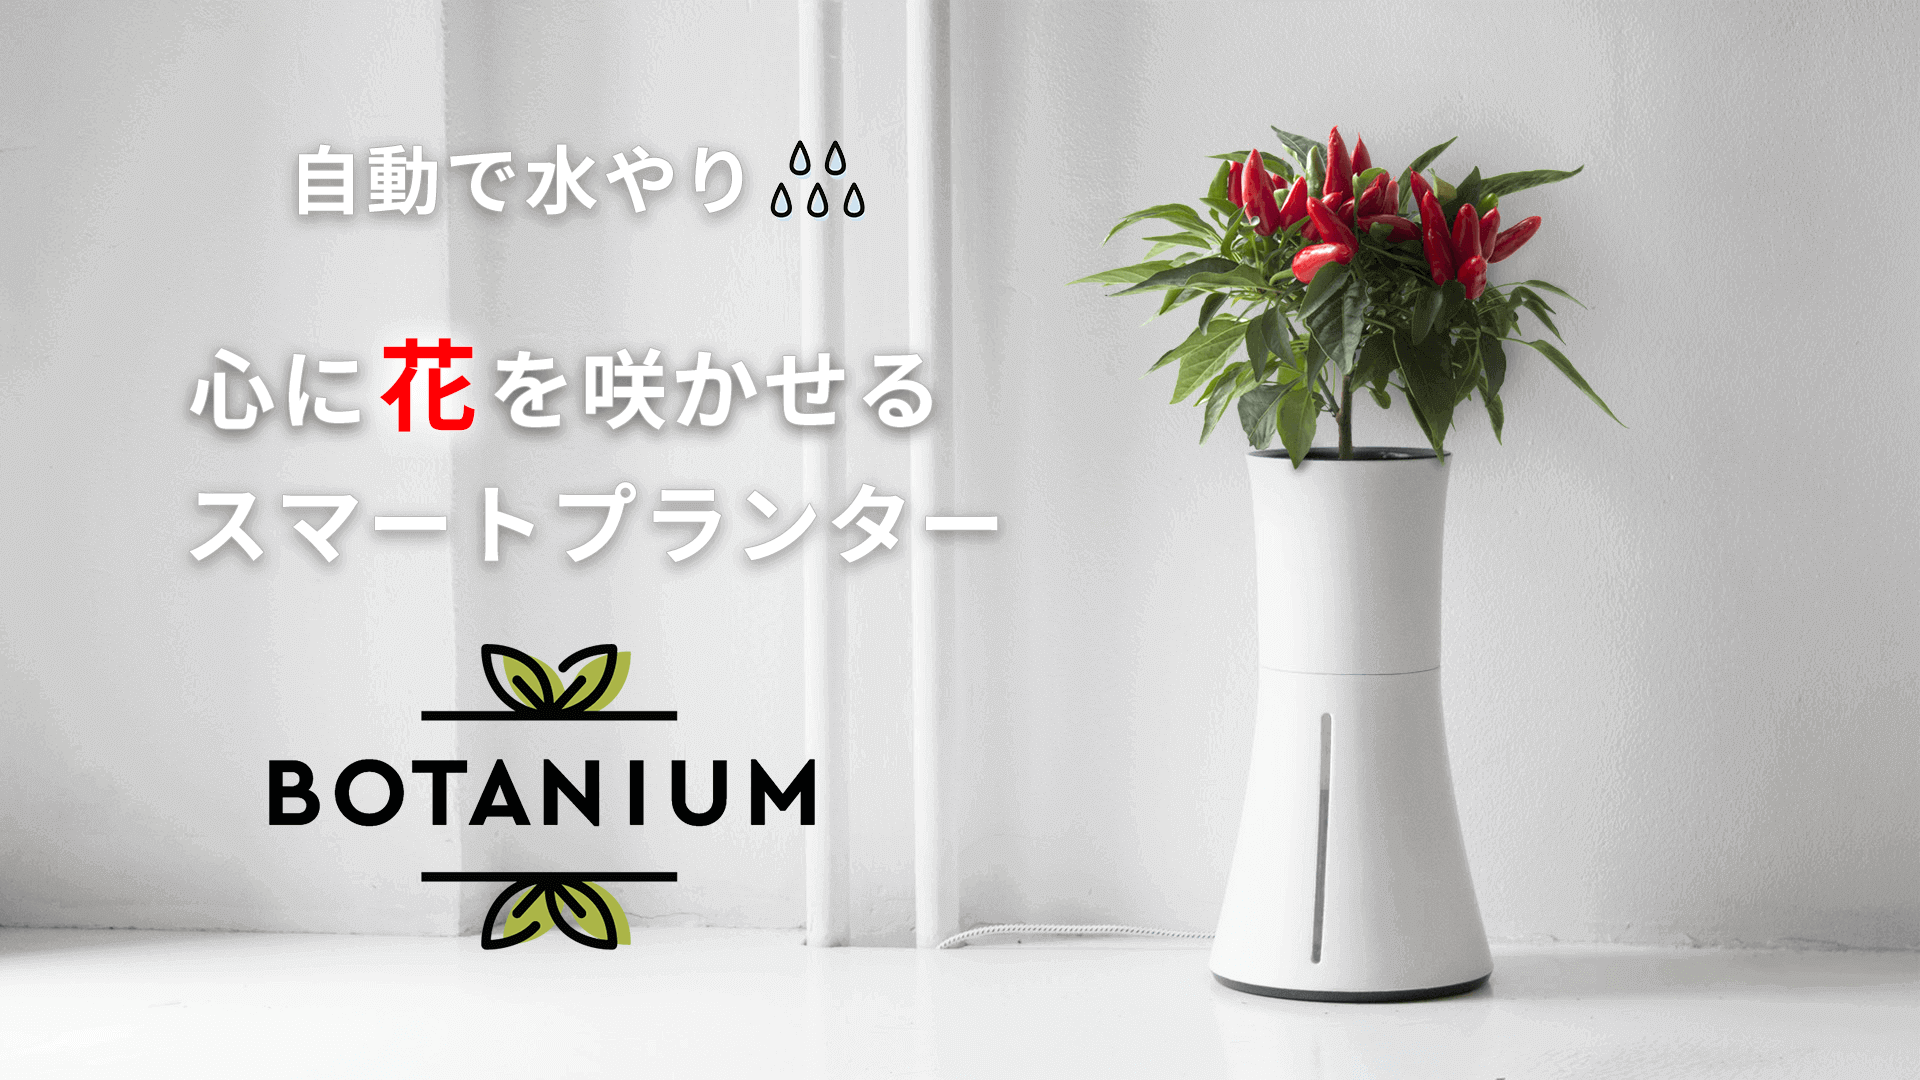 45％割引ホワイト系売れ筋アイテムラン botanium ボタニアム ローレルグリーン 花瓶 インテリア小物ホワイト系-OTA.ON